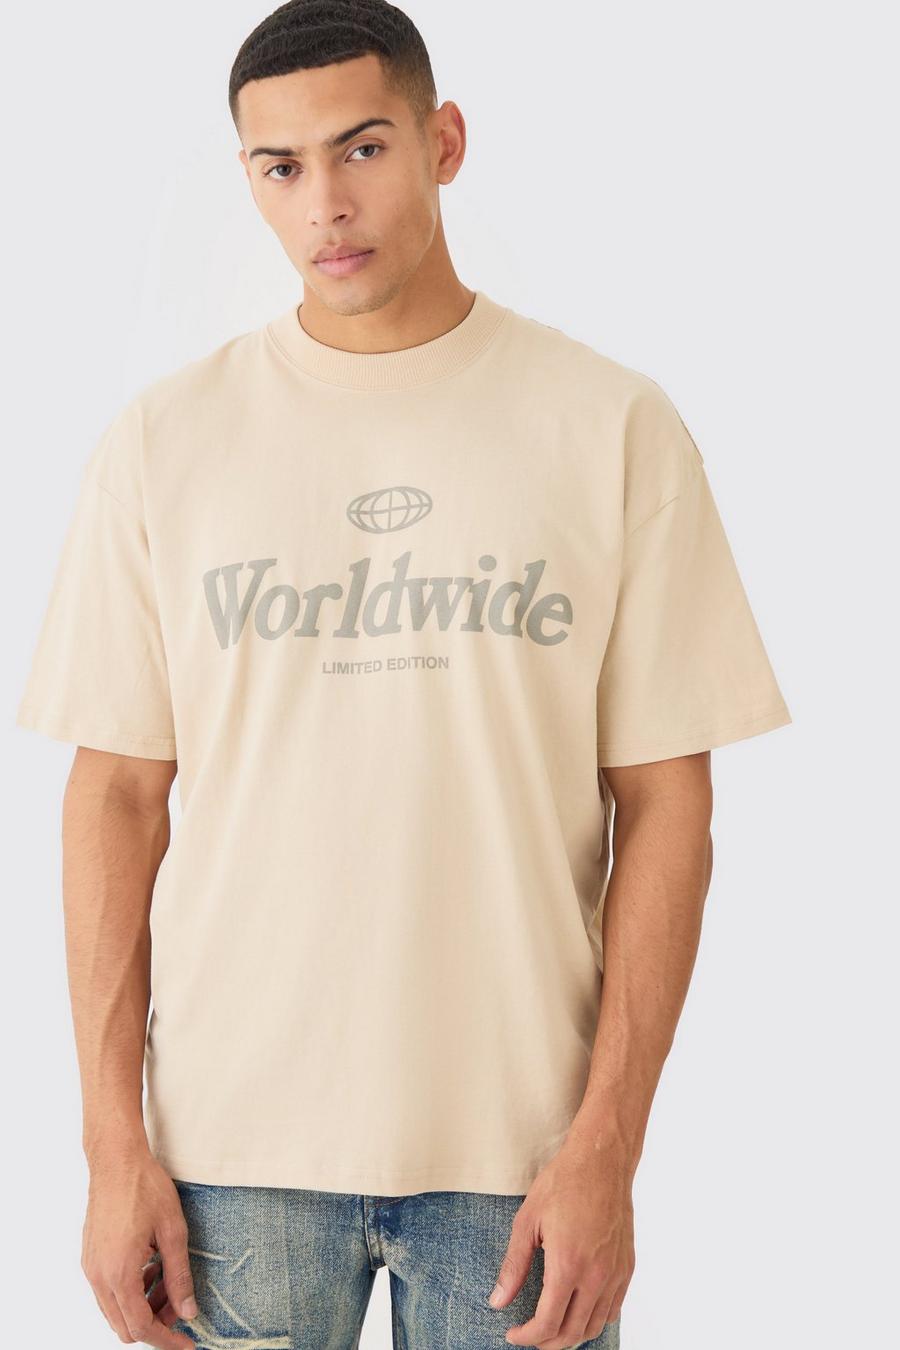 Camiseta oversize Worldwide, Sand image number 1